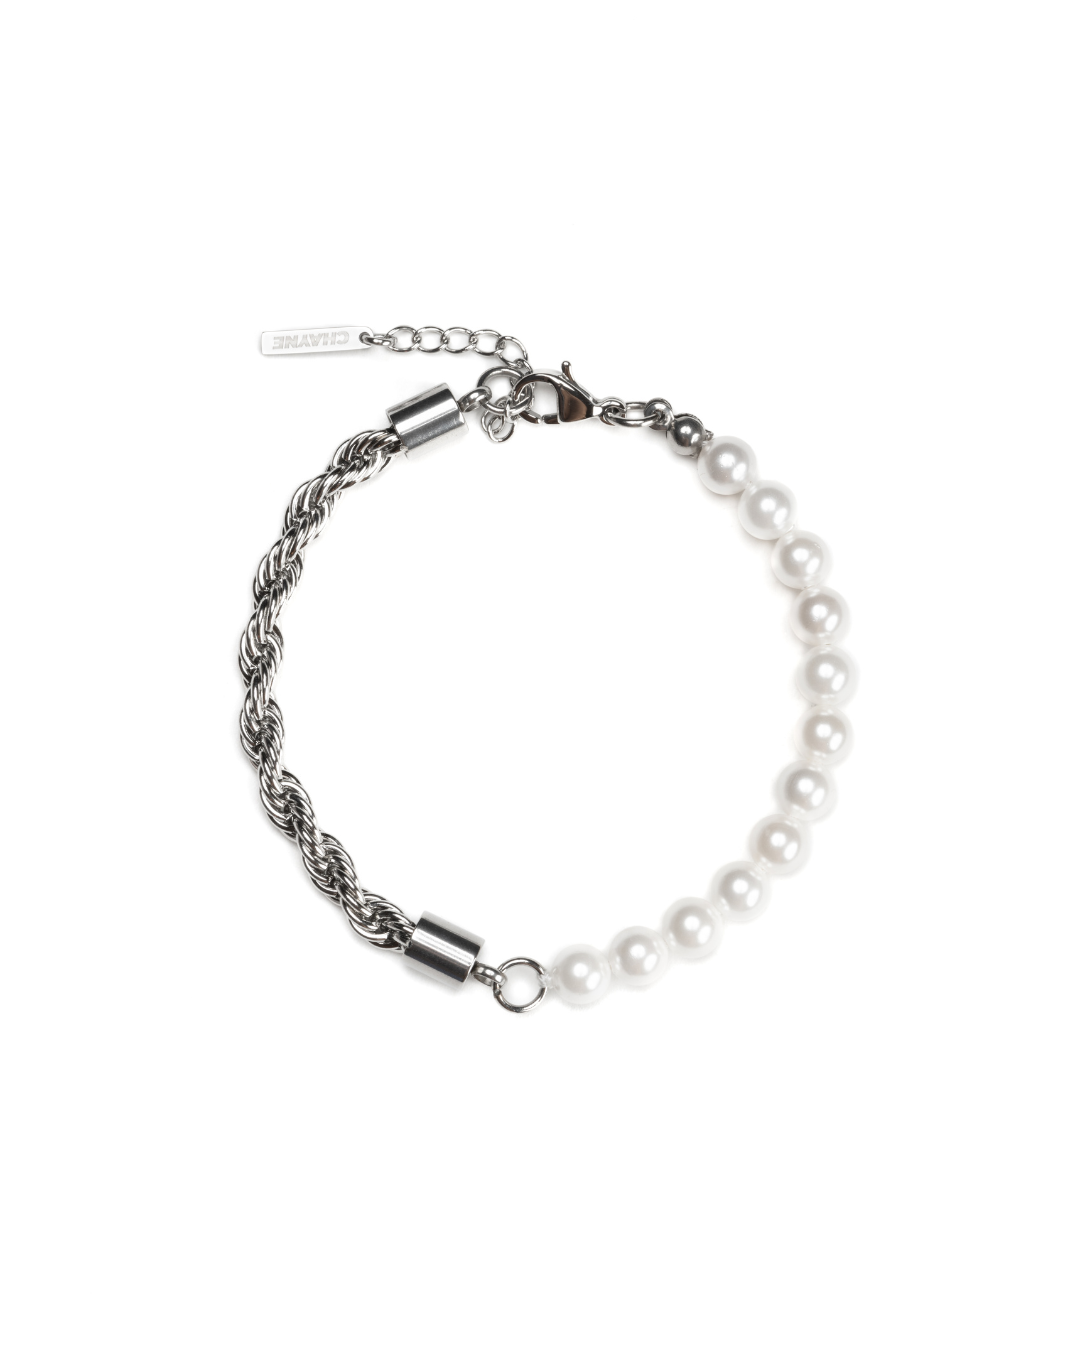 Pearl Rope Bracelet